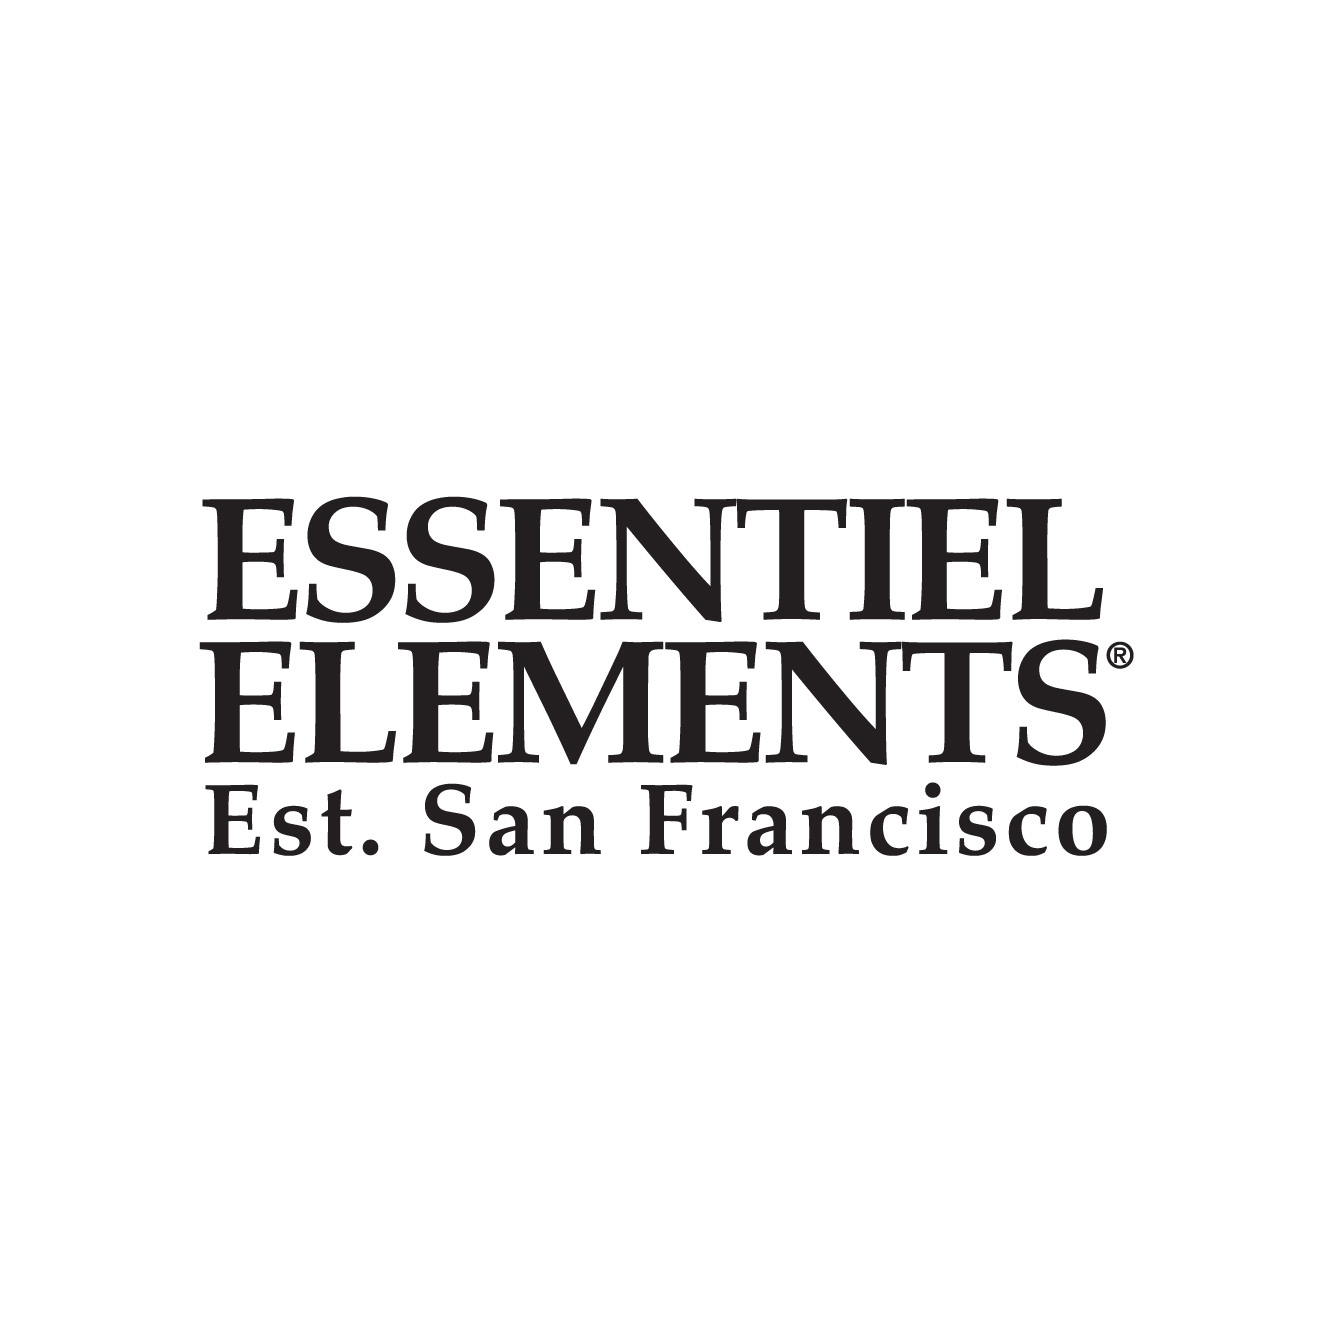 Essentiel Elements Hotelier Collection est. San Francisco